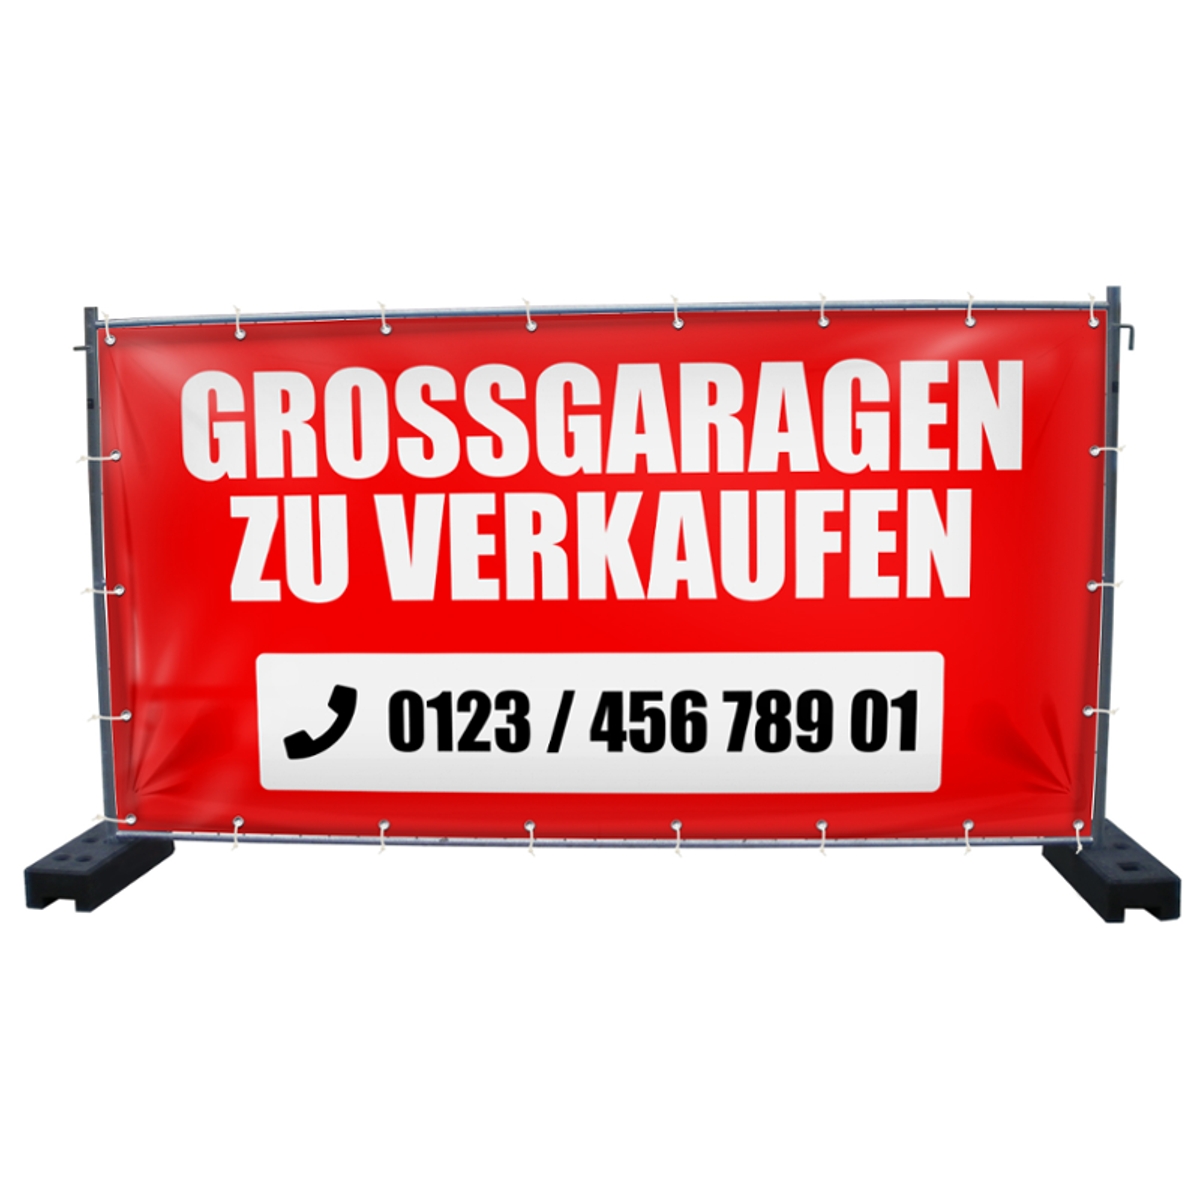 340 x 173 cm | Großgaragen zu verkaufen Bauzaunbanner (3997)